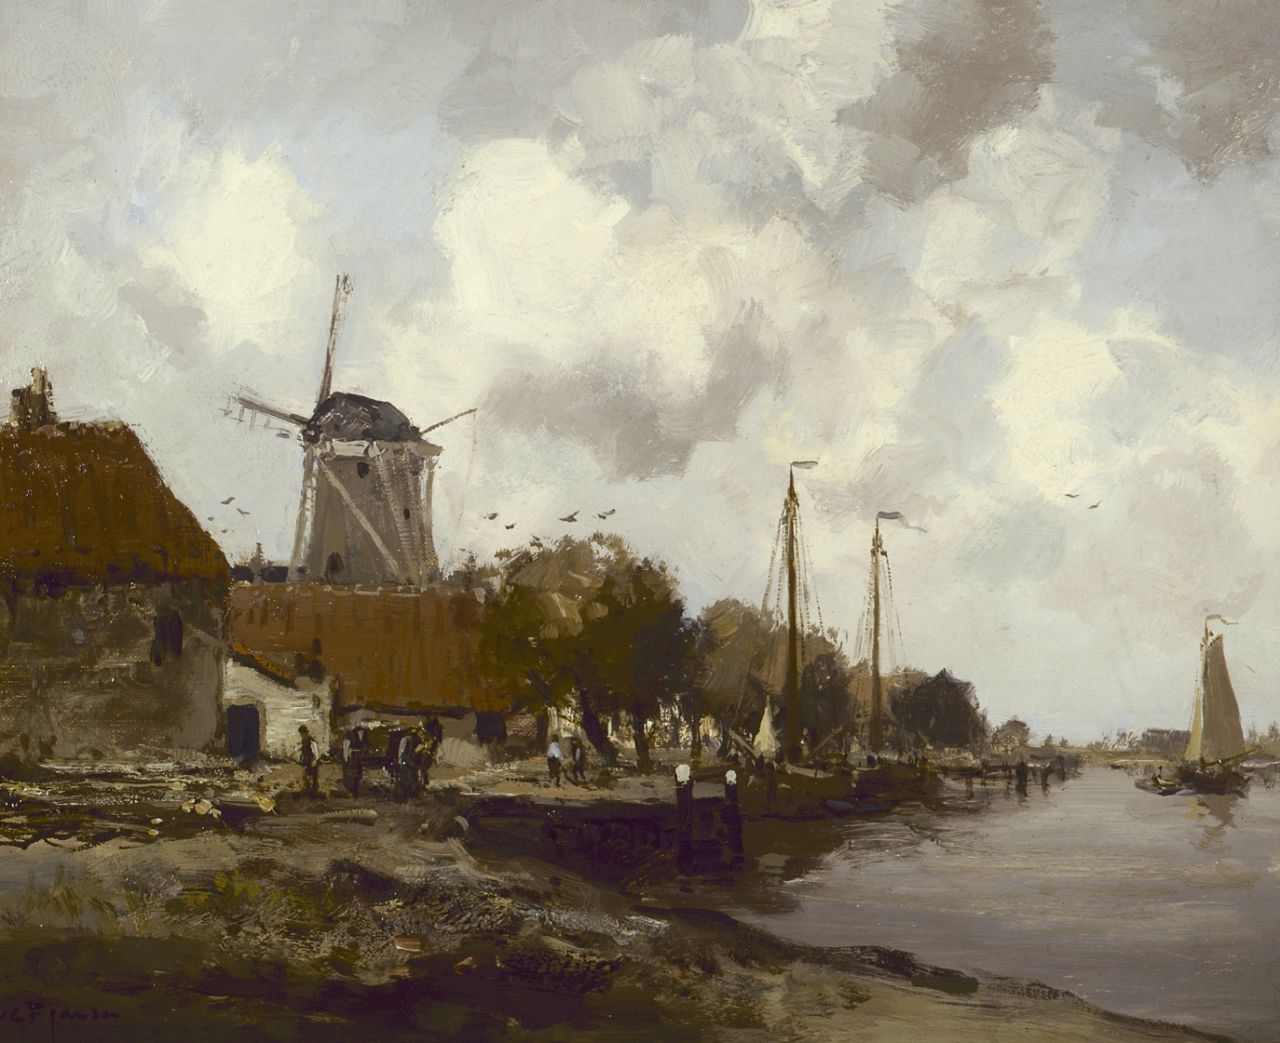 Jansen W.G.F.  | 'Willem' George Frederik Jansen, Village along the 'Zuiderzee', oil on canvas 41.0 x 51.0 cm, signed l.l.